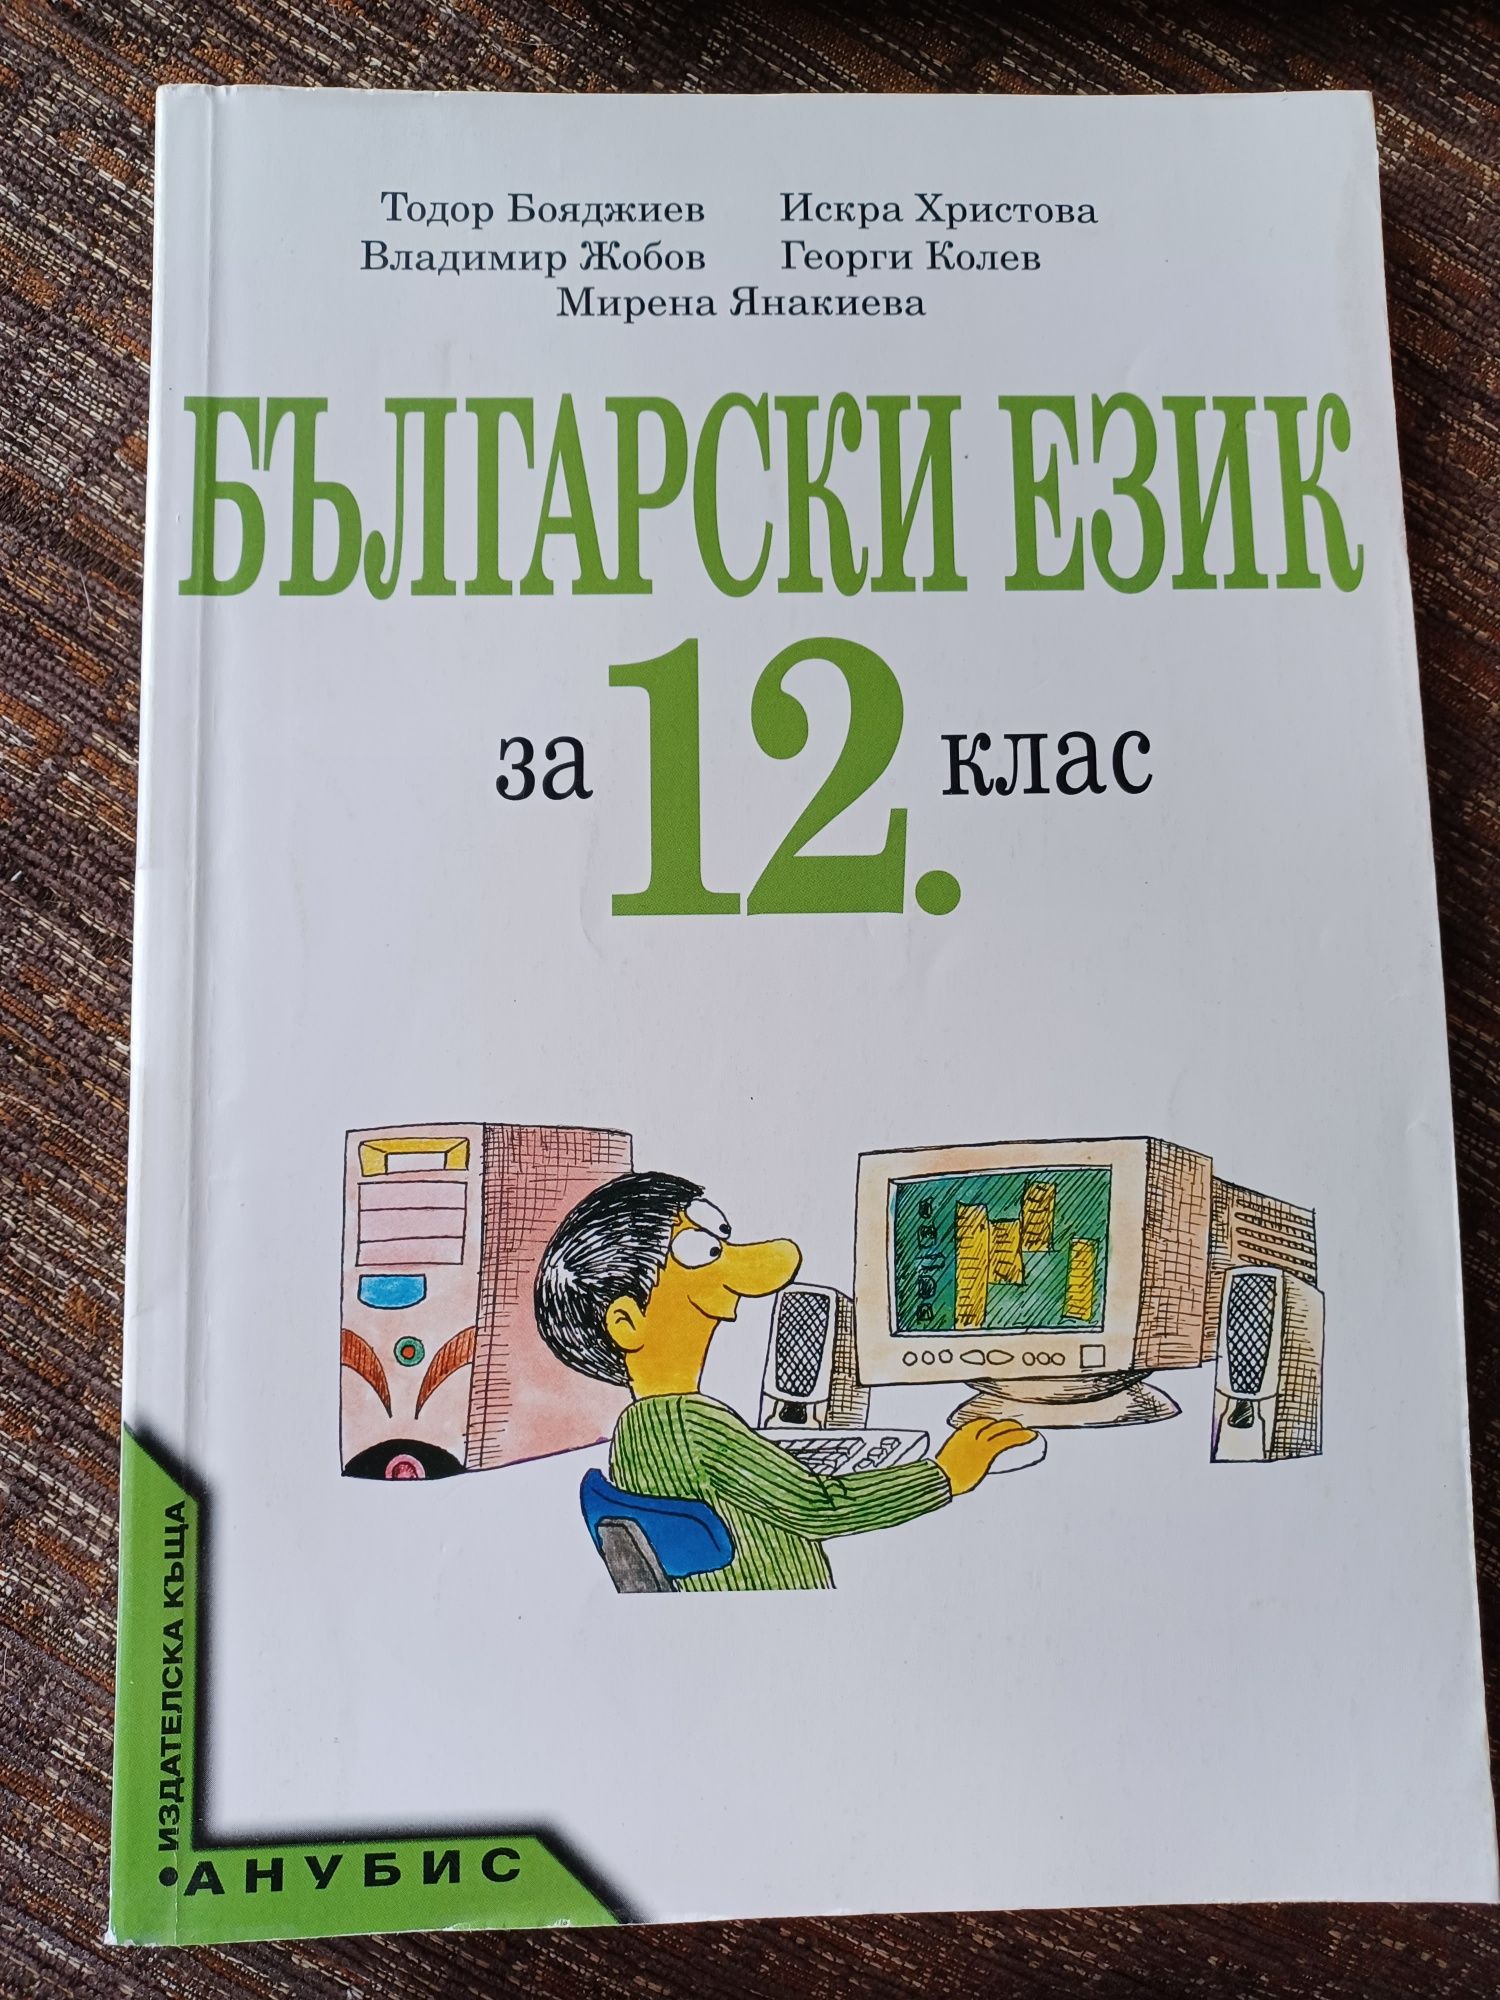 Учебник по български език за 8, 9, 11, 12кл.